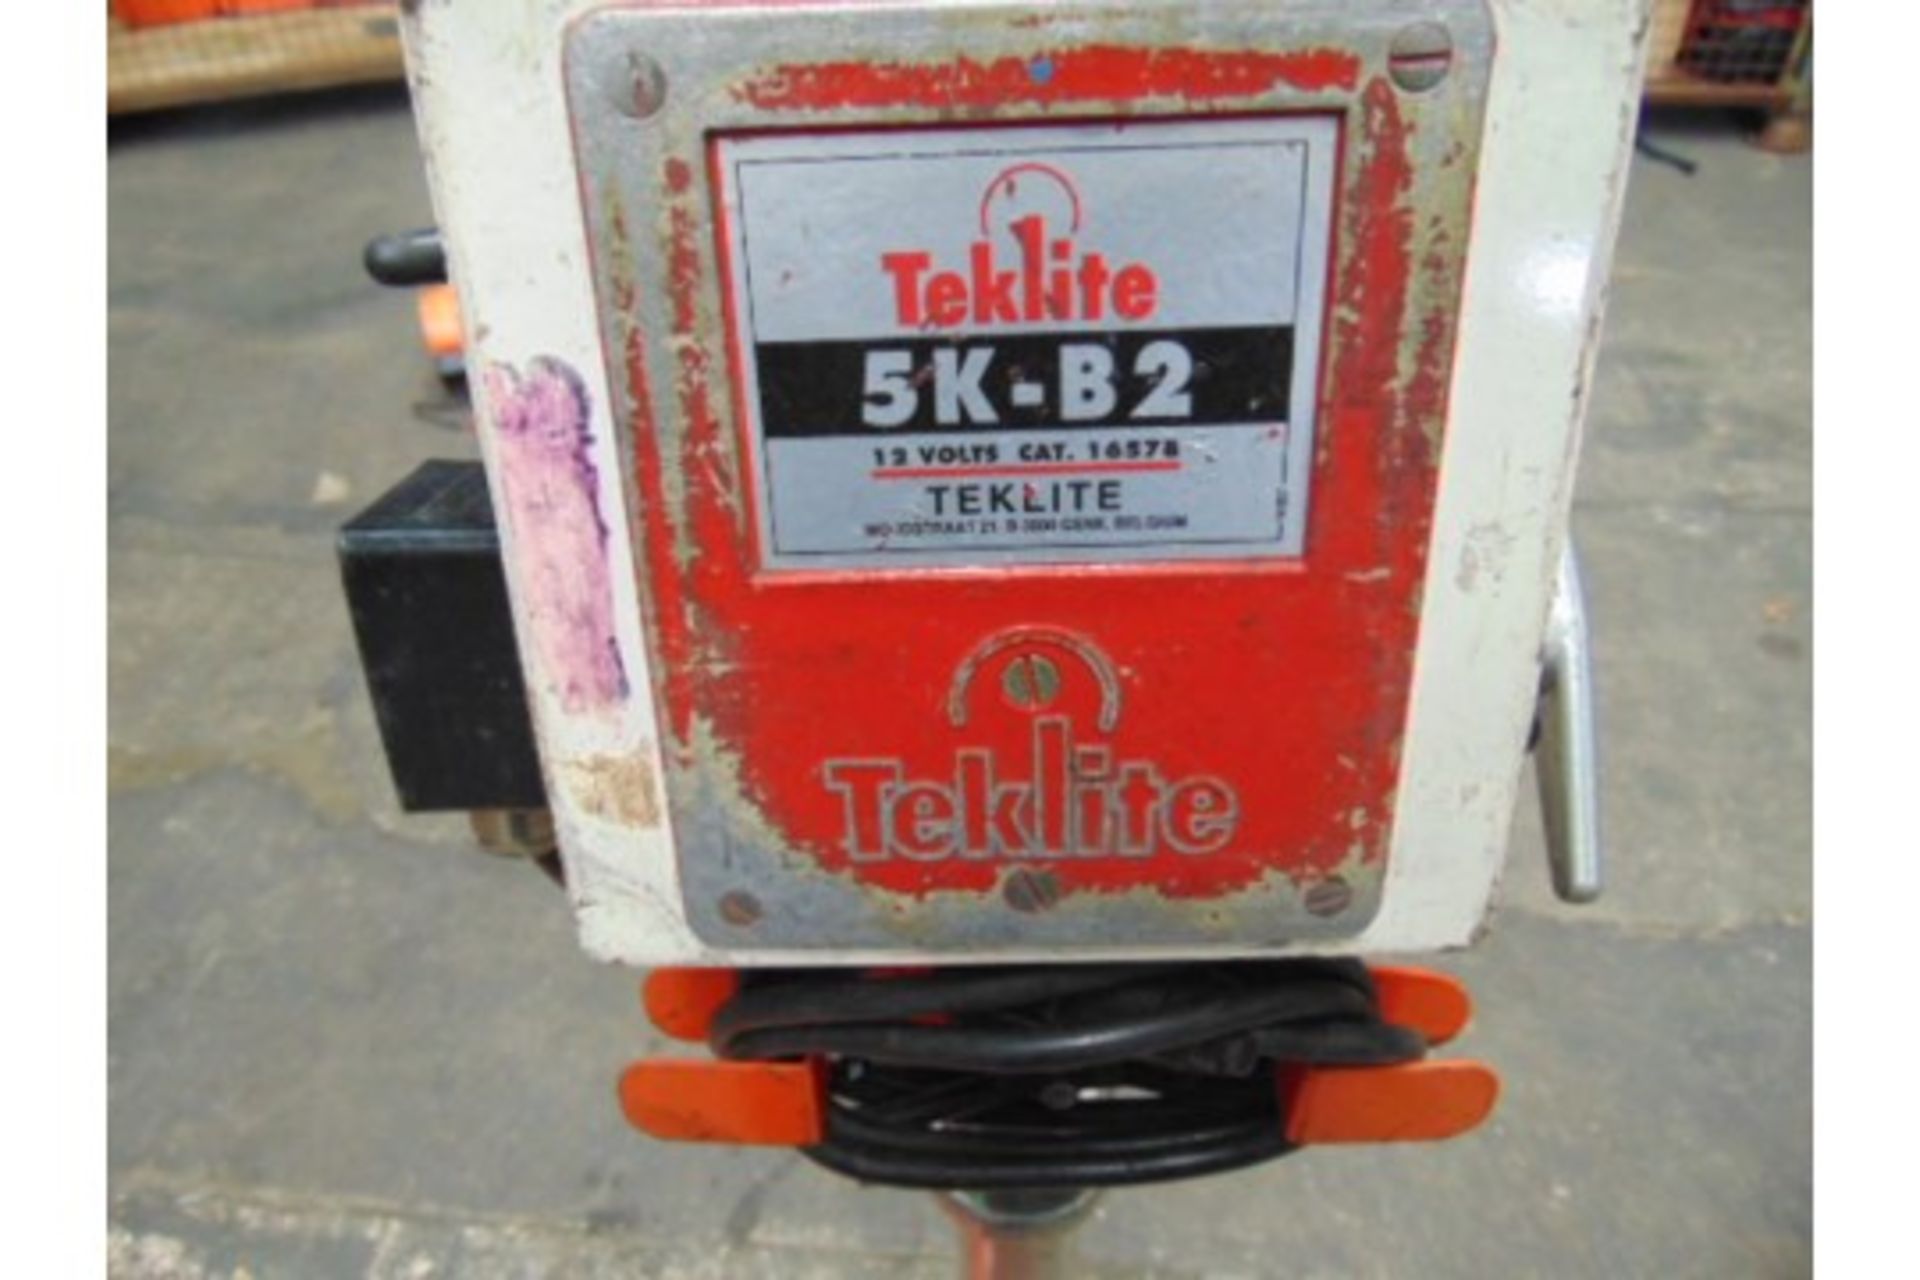 Teklite 5K-B2 Portable Worklight with 2 xTeklite Senior Battery - Image 3 of 4